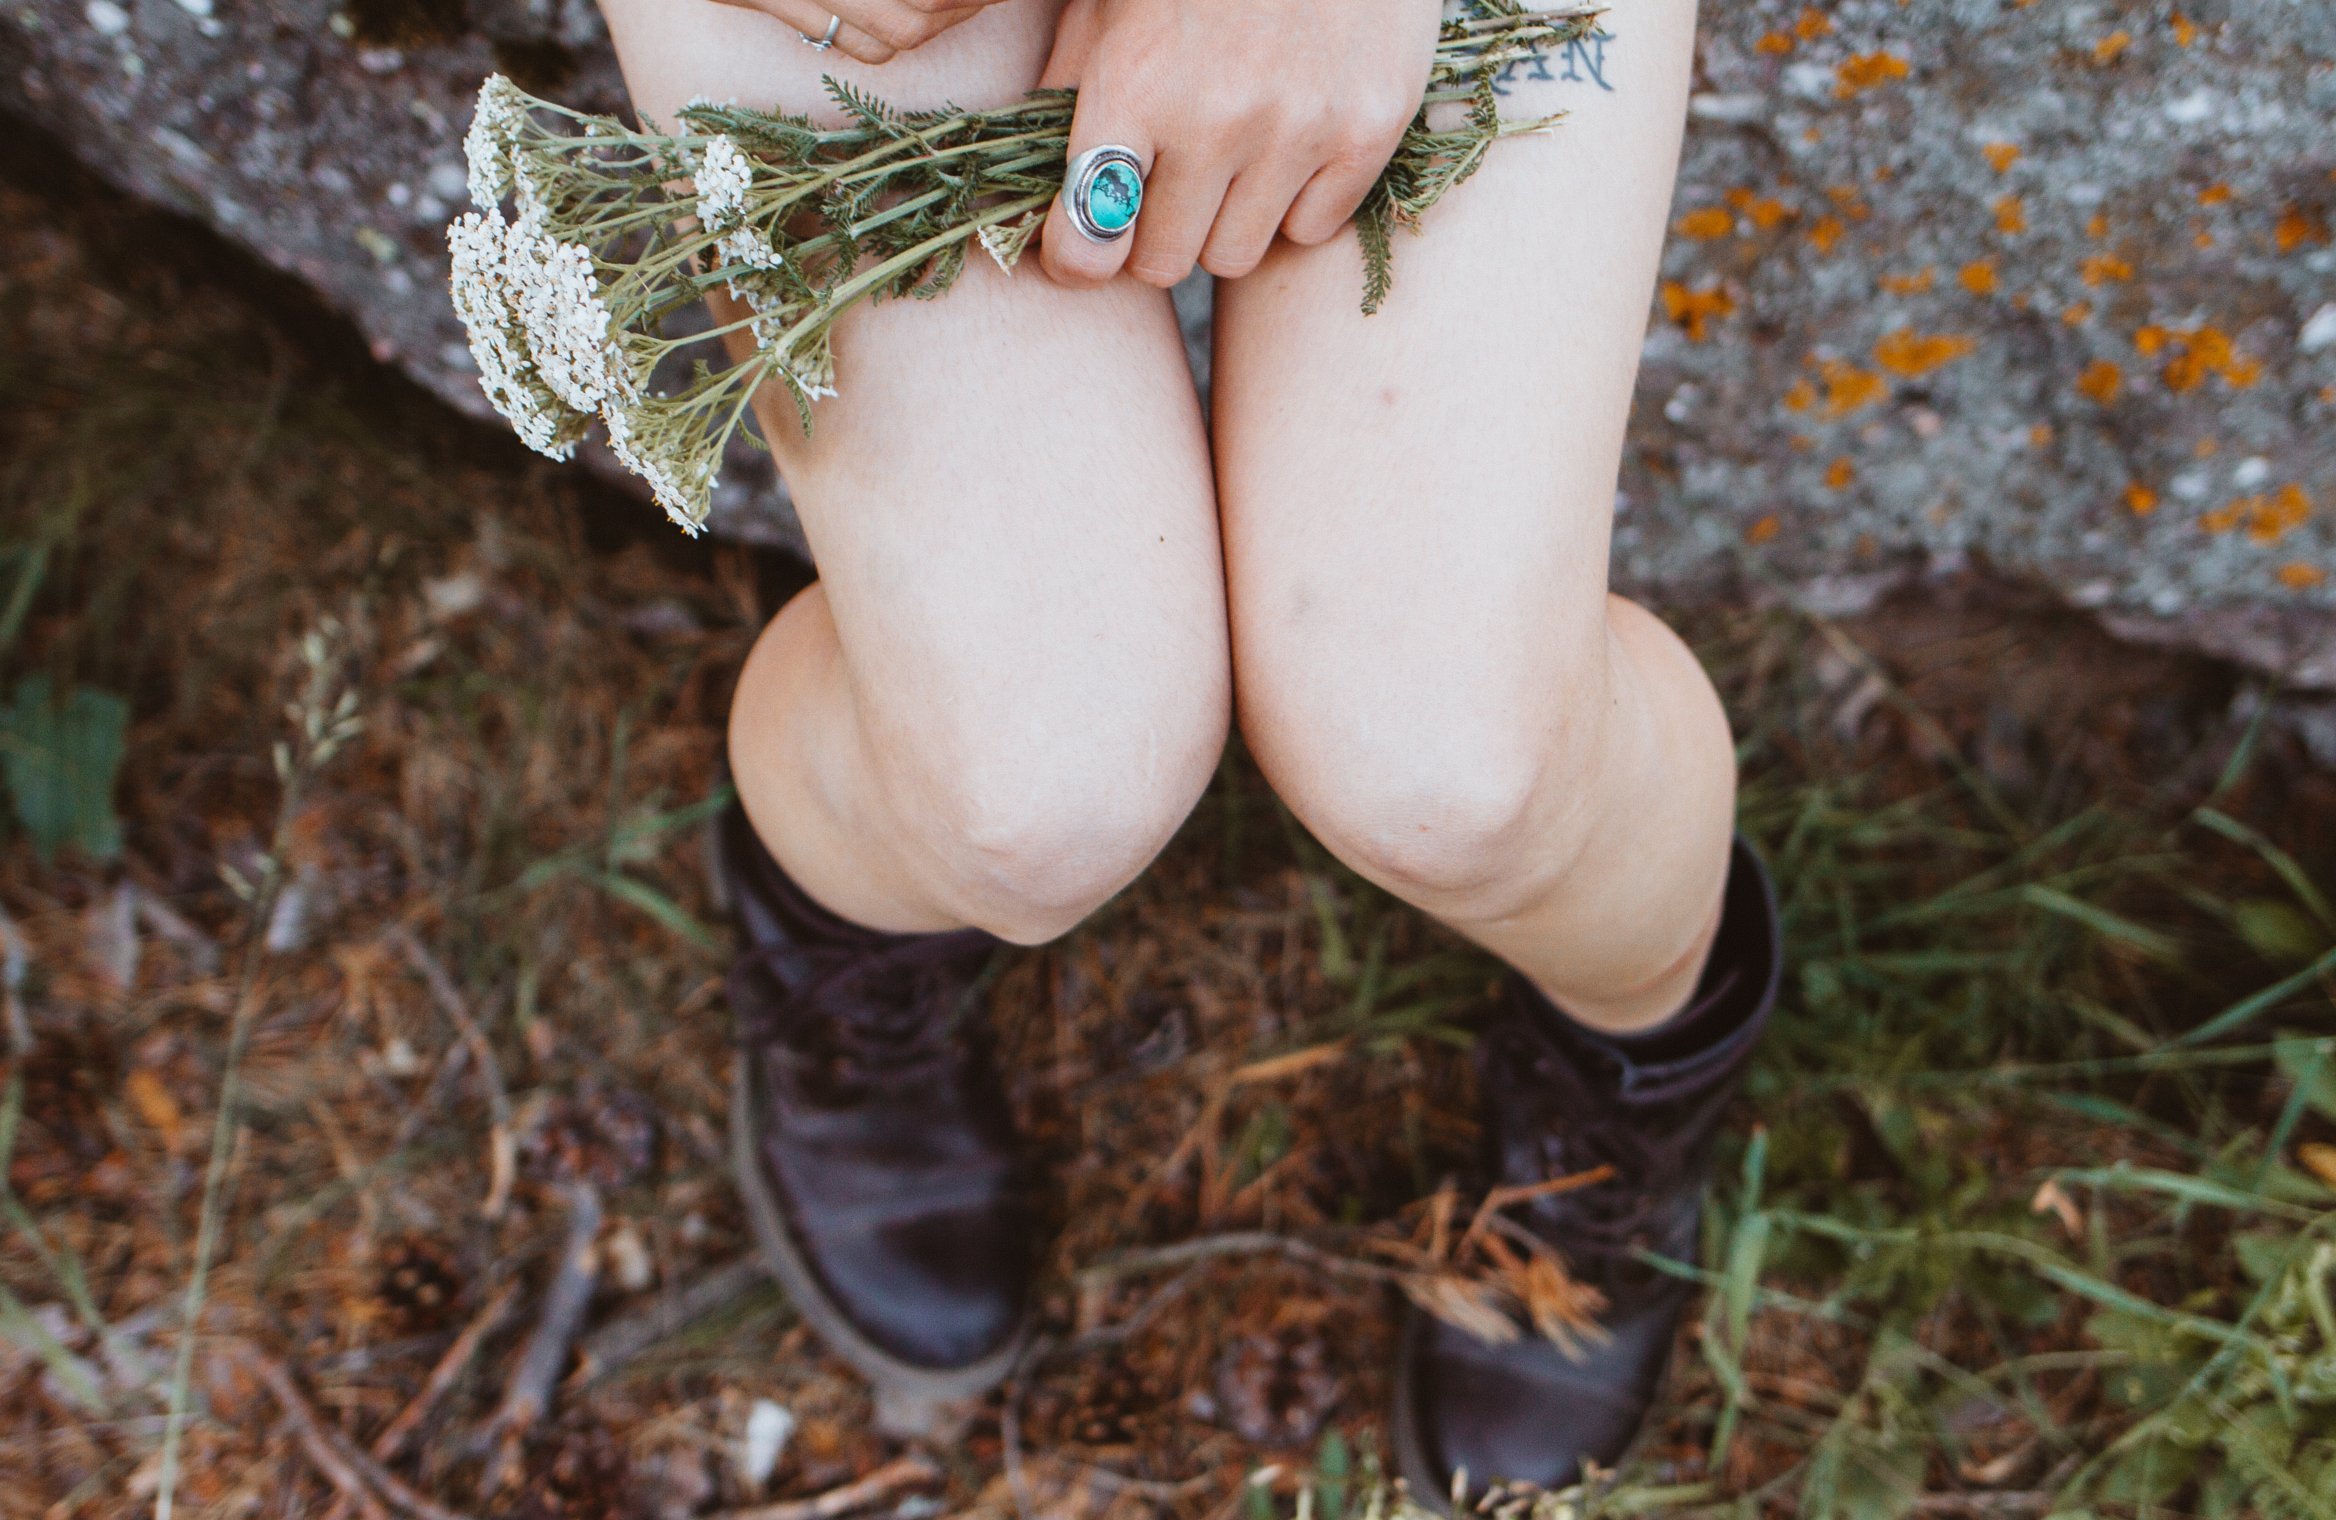 Mulher com as pernas expostas, usando coturno preto. Seus joelhos estão se tocando, e ela segura um pequeno buquê de flores em cima das coxas.